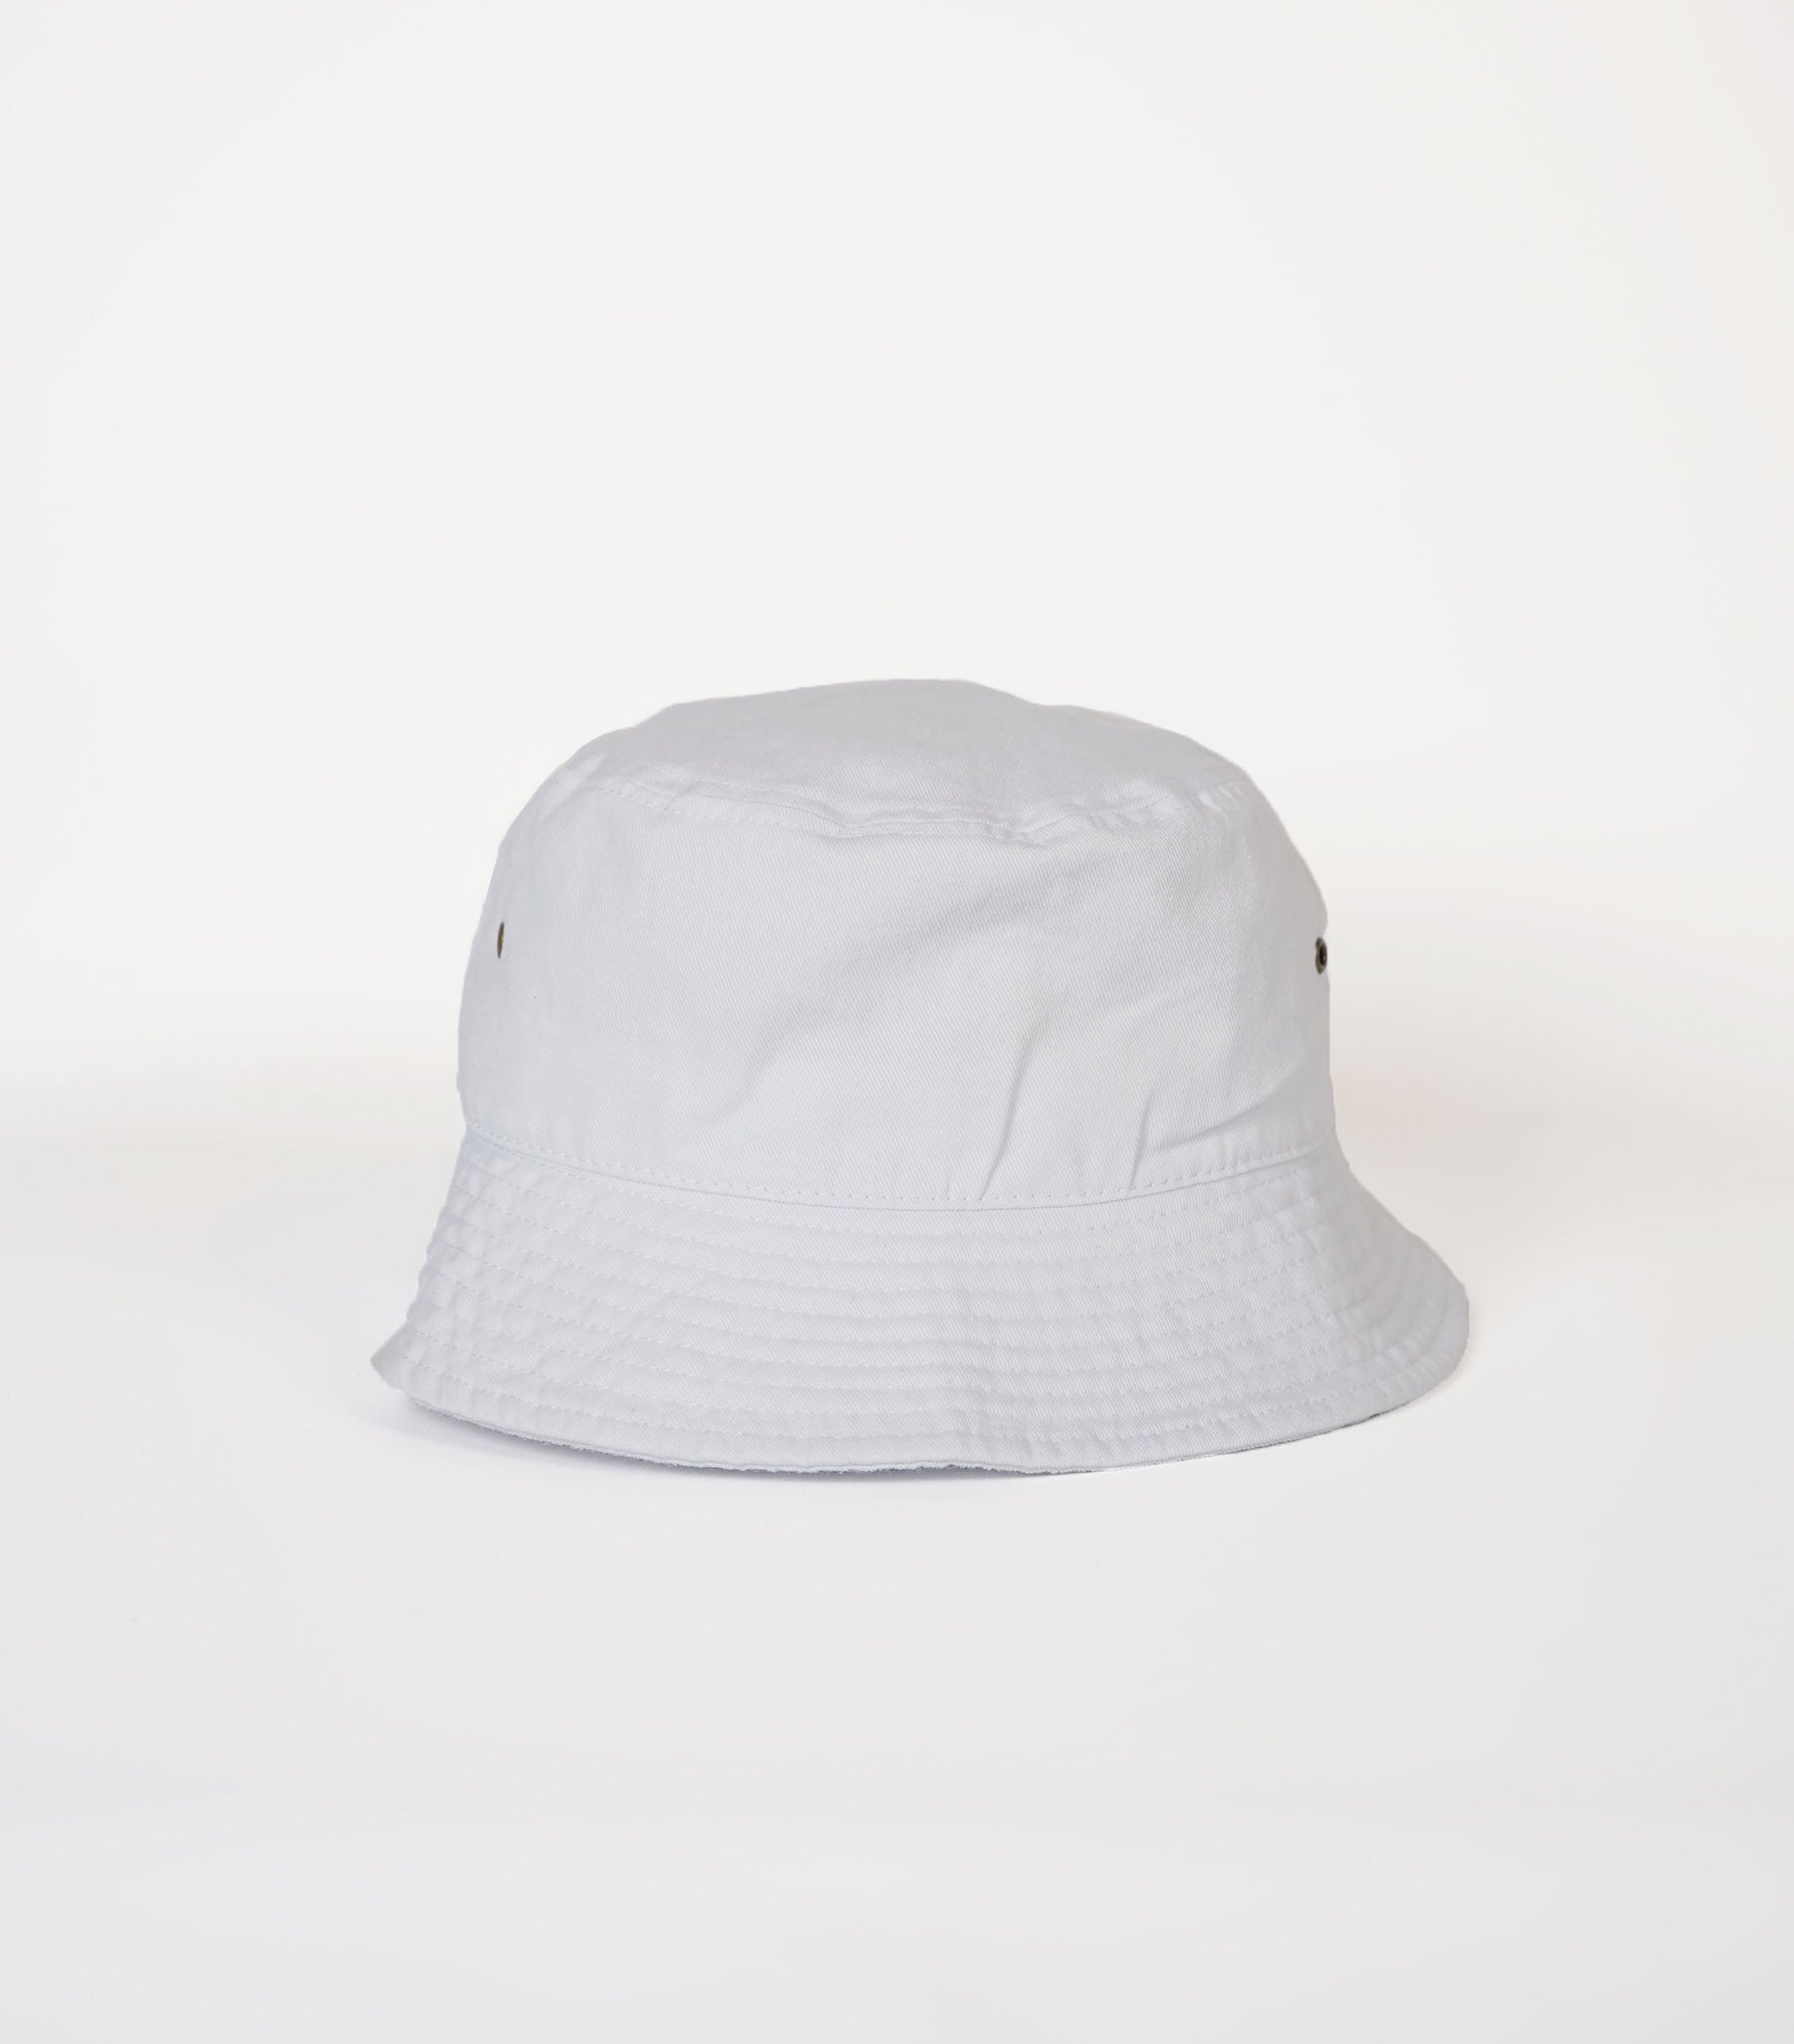 Cotton bucket hat - White - Men